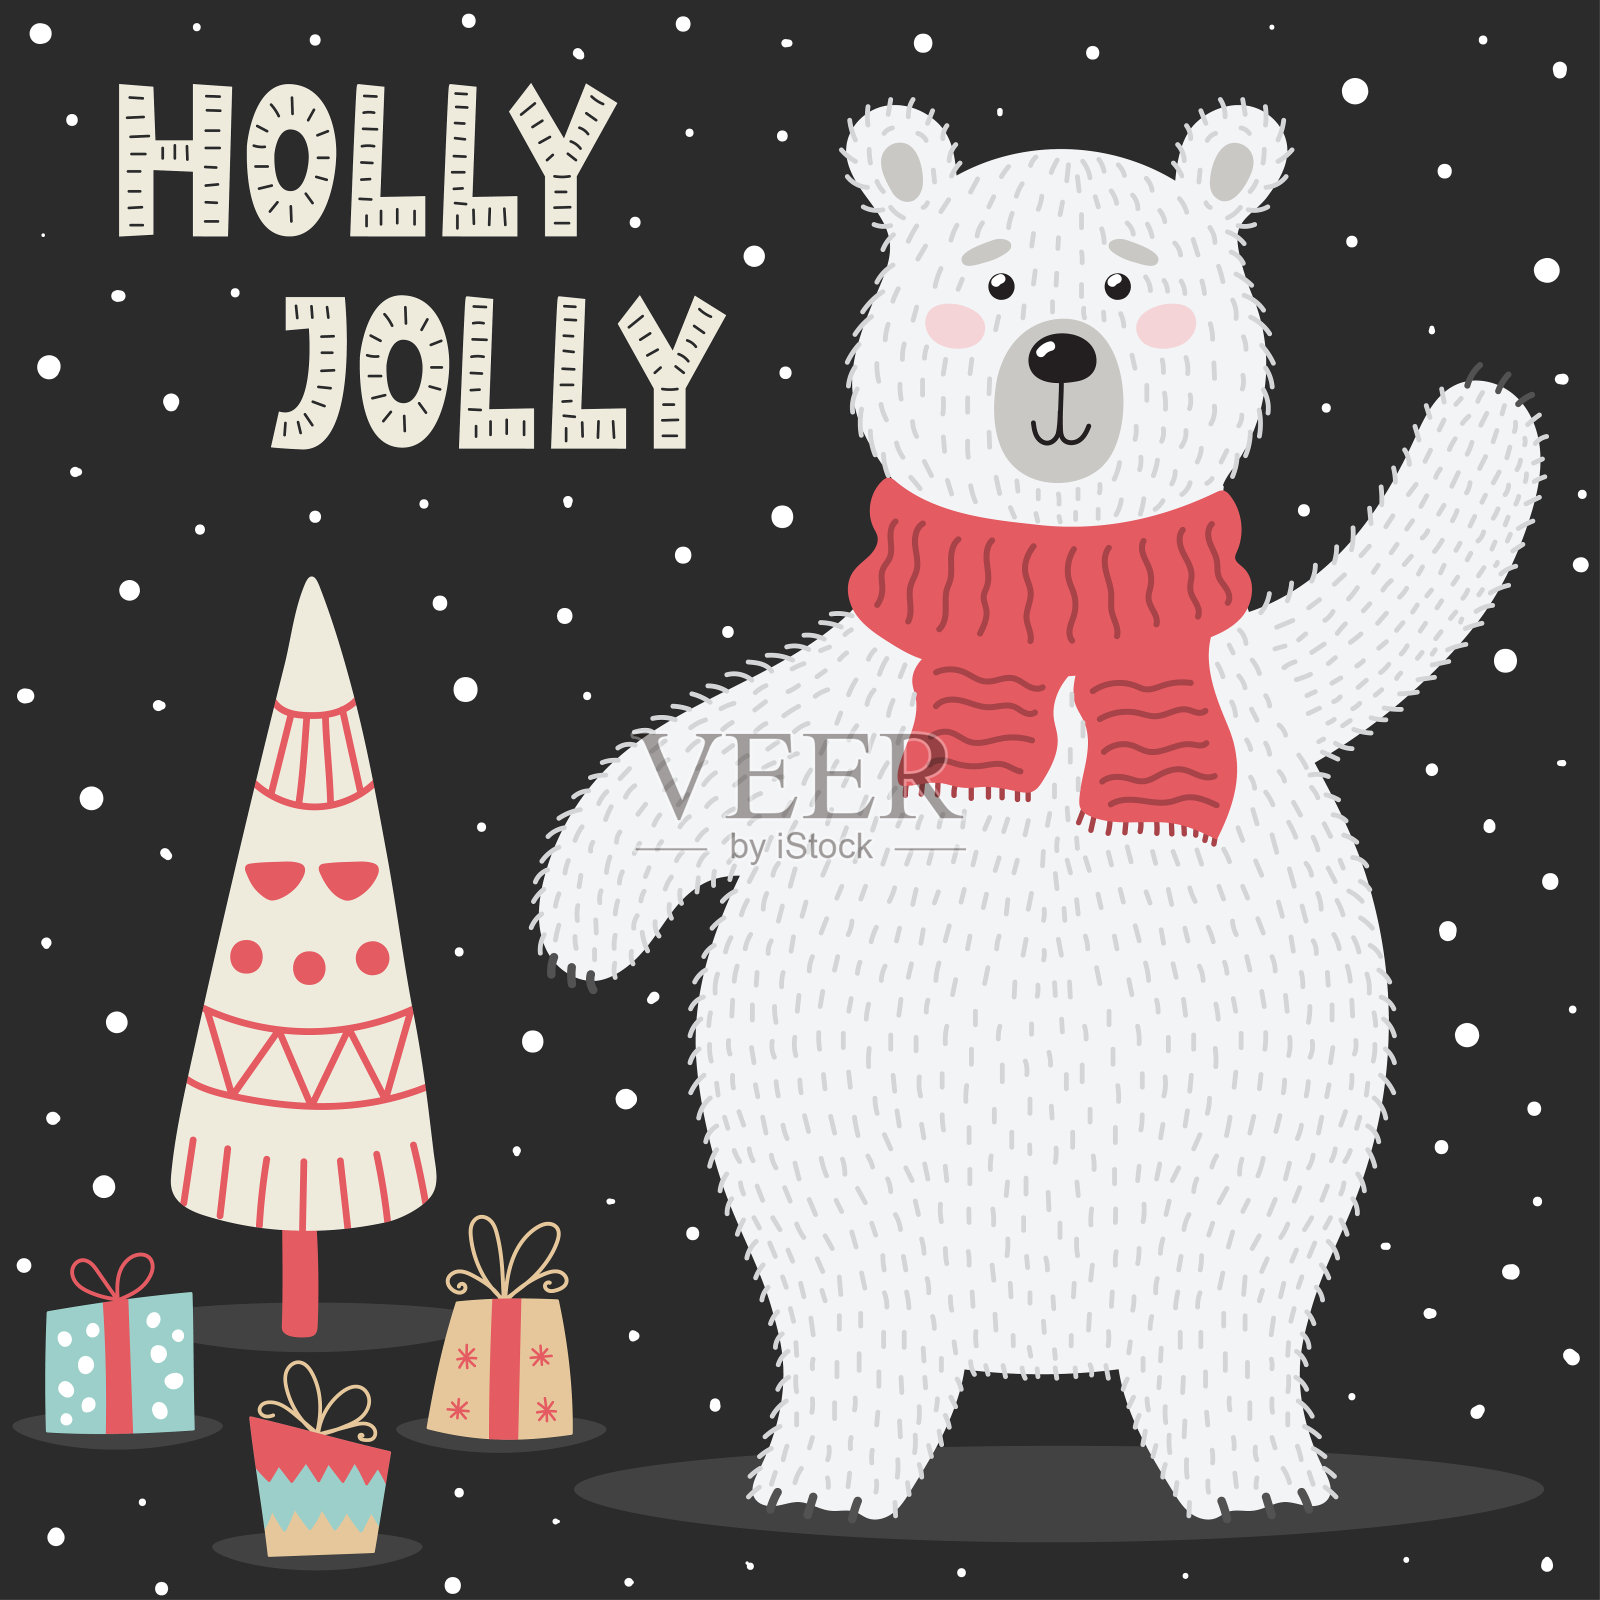 霍莉·乔利的贺卡，还有一只可爱的北极熊设计模板素材